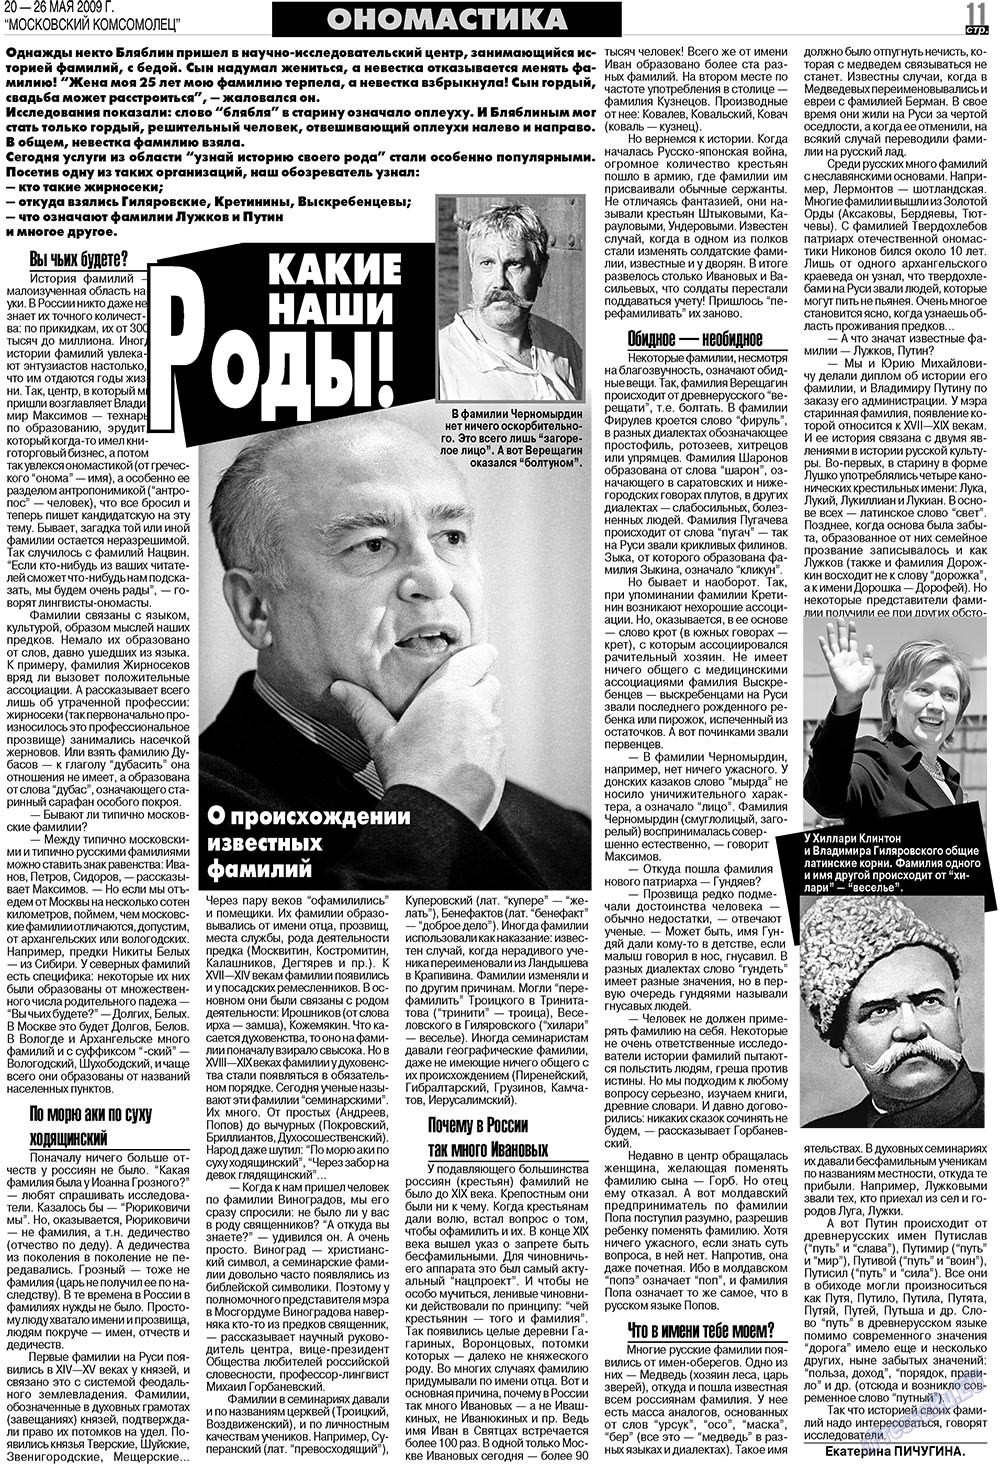 МК Испания, газета. 2009 №21 стр.11